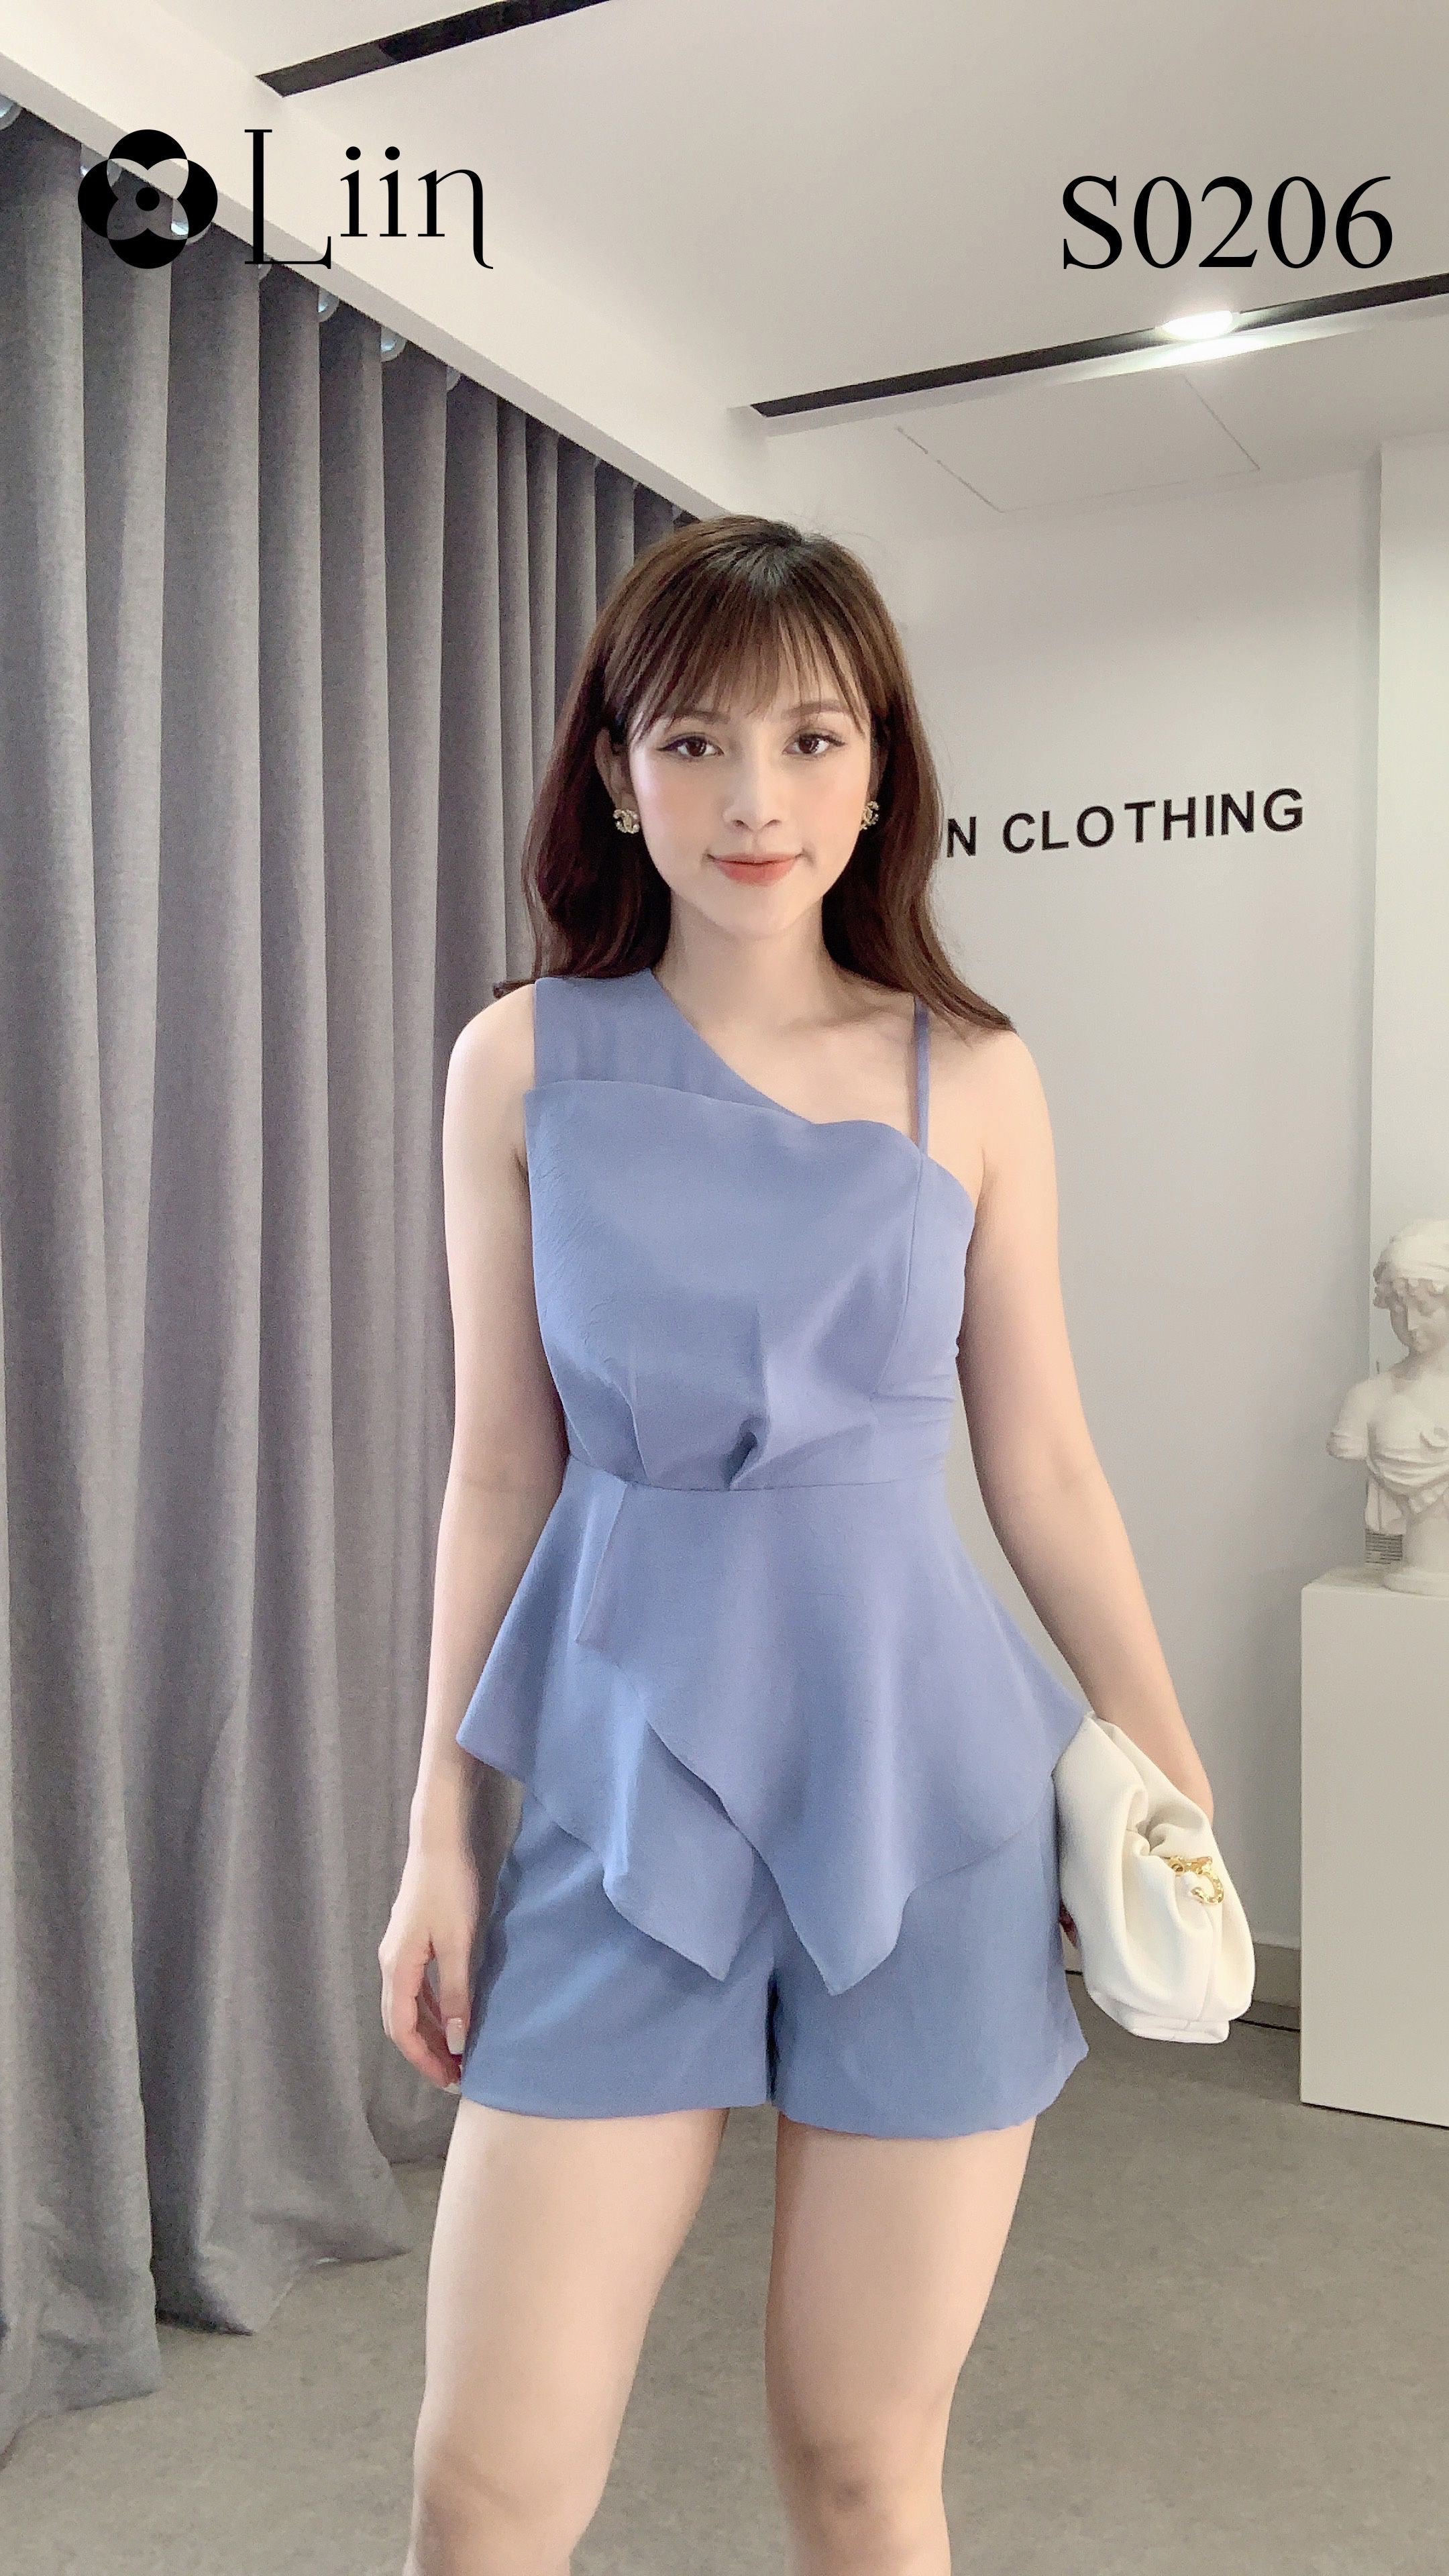 [Mã FAMALLT5 giảm 15% đơn 150k] Set quần áo nữ Linbi màu xanh, thiết kế sang chảnh xinh xắn liin clothing S0206